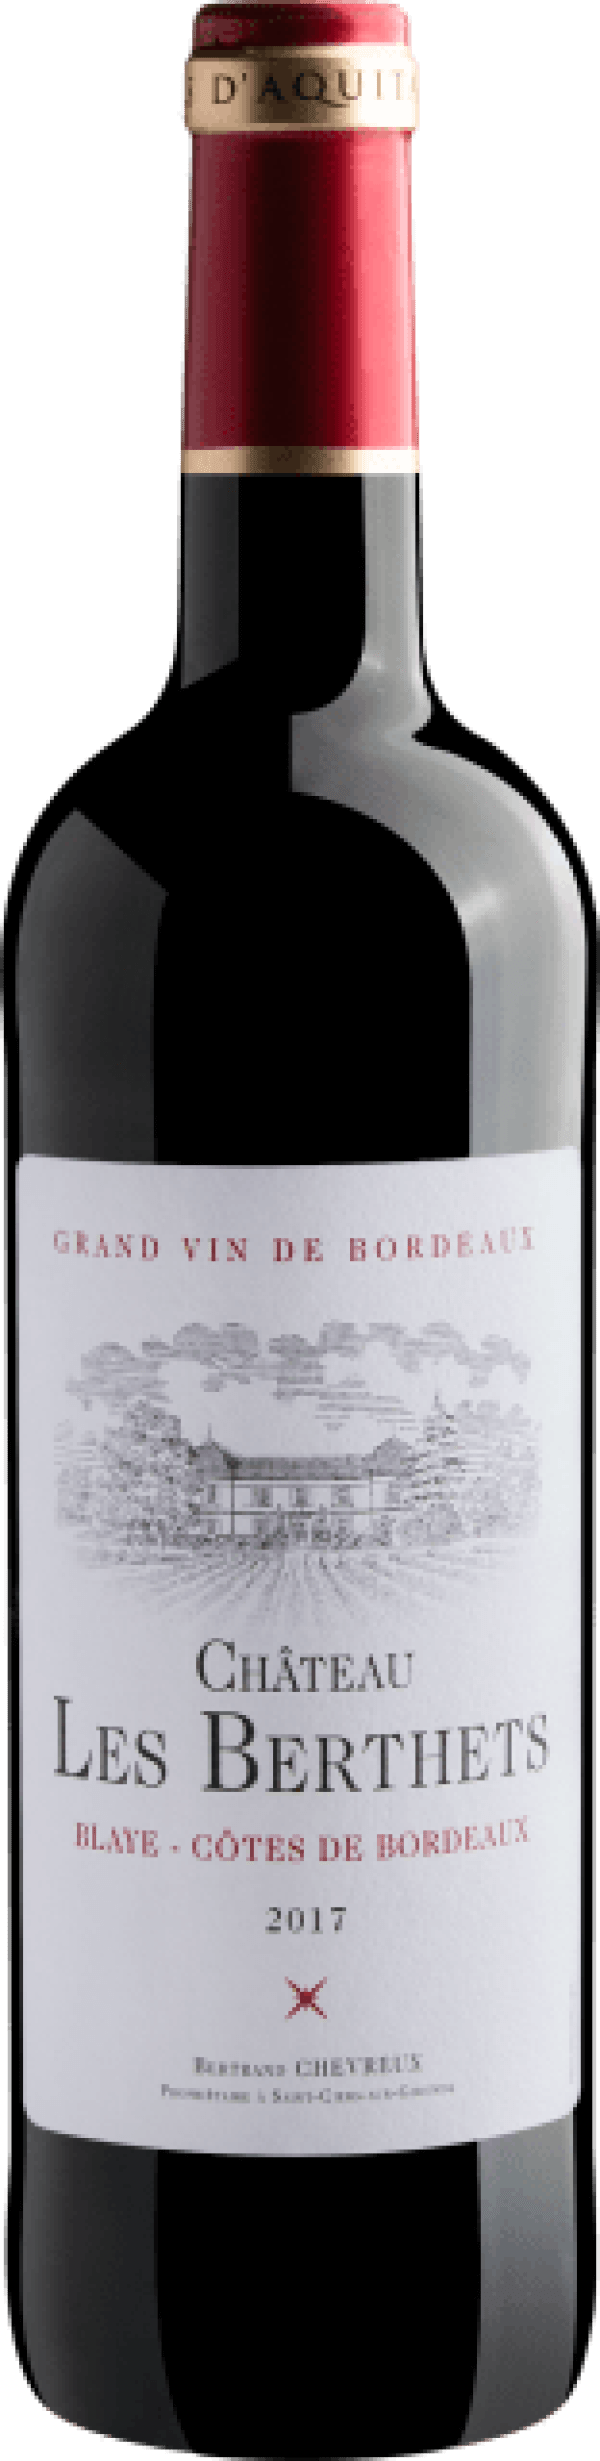 Grand Vin de Bordeaux Château Les Berthets Blaye Côtes de Bordeaux 2017